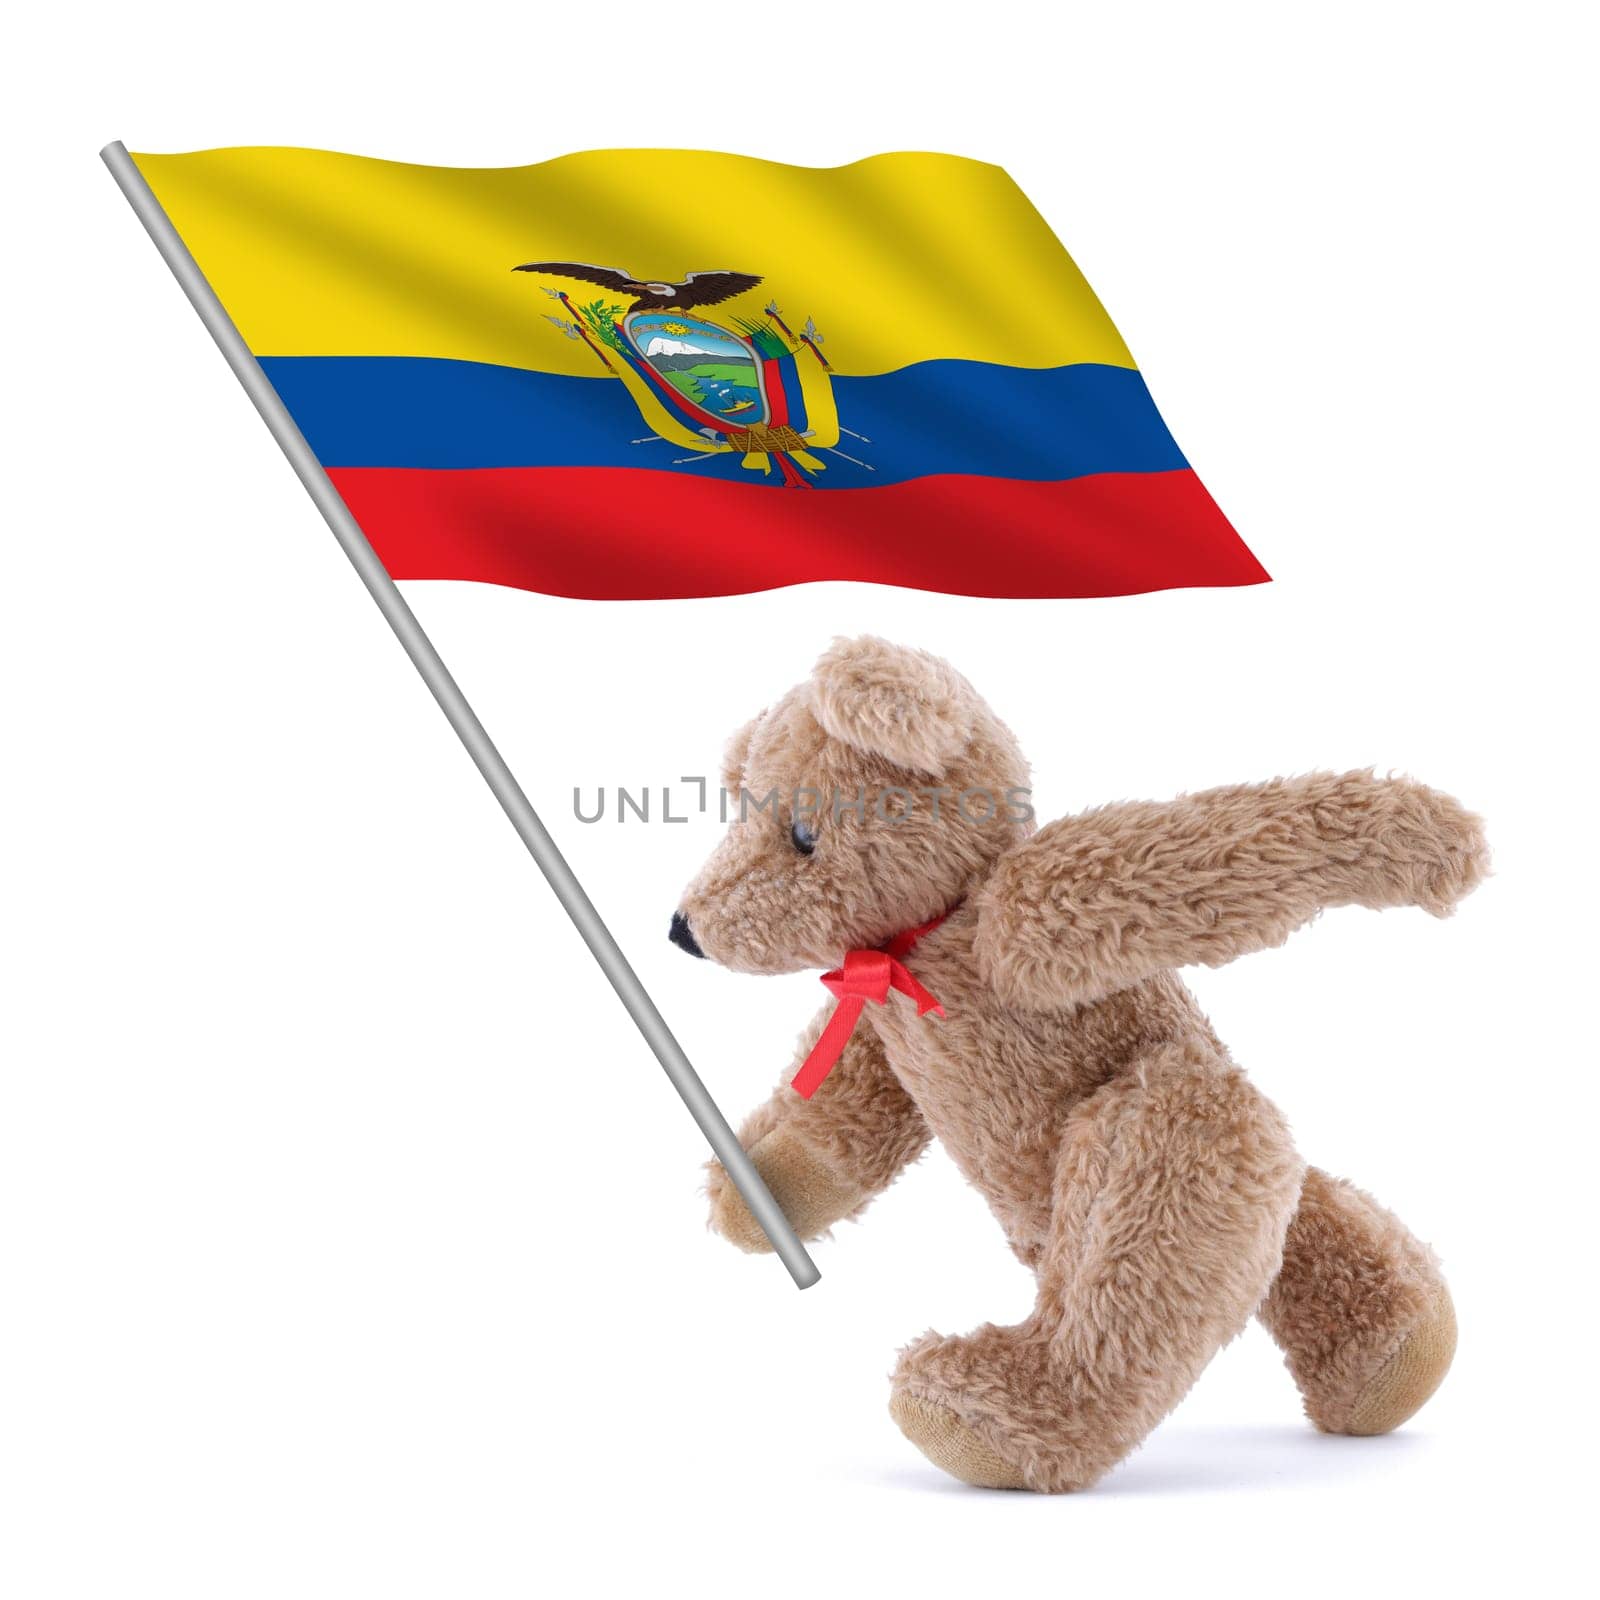 An Ecuador flag being carried by a cute teddy bear